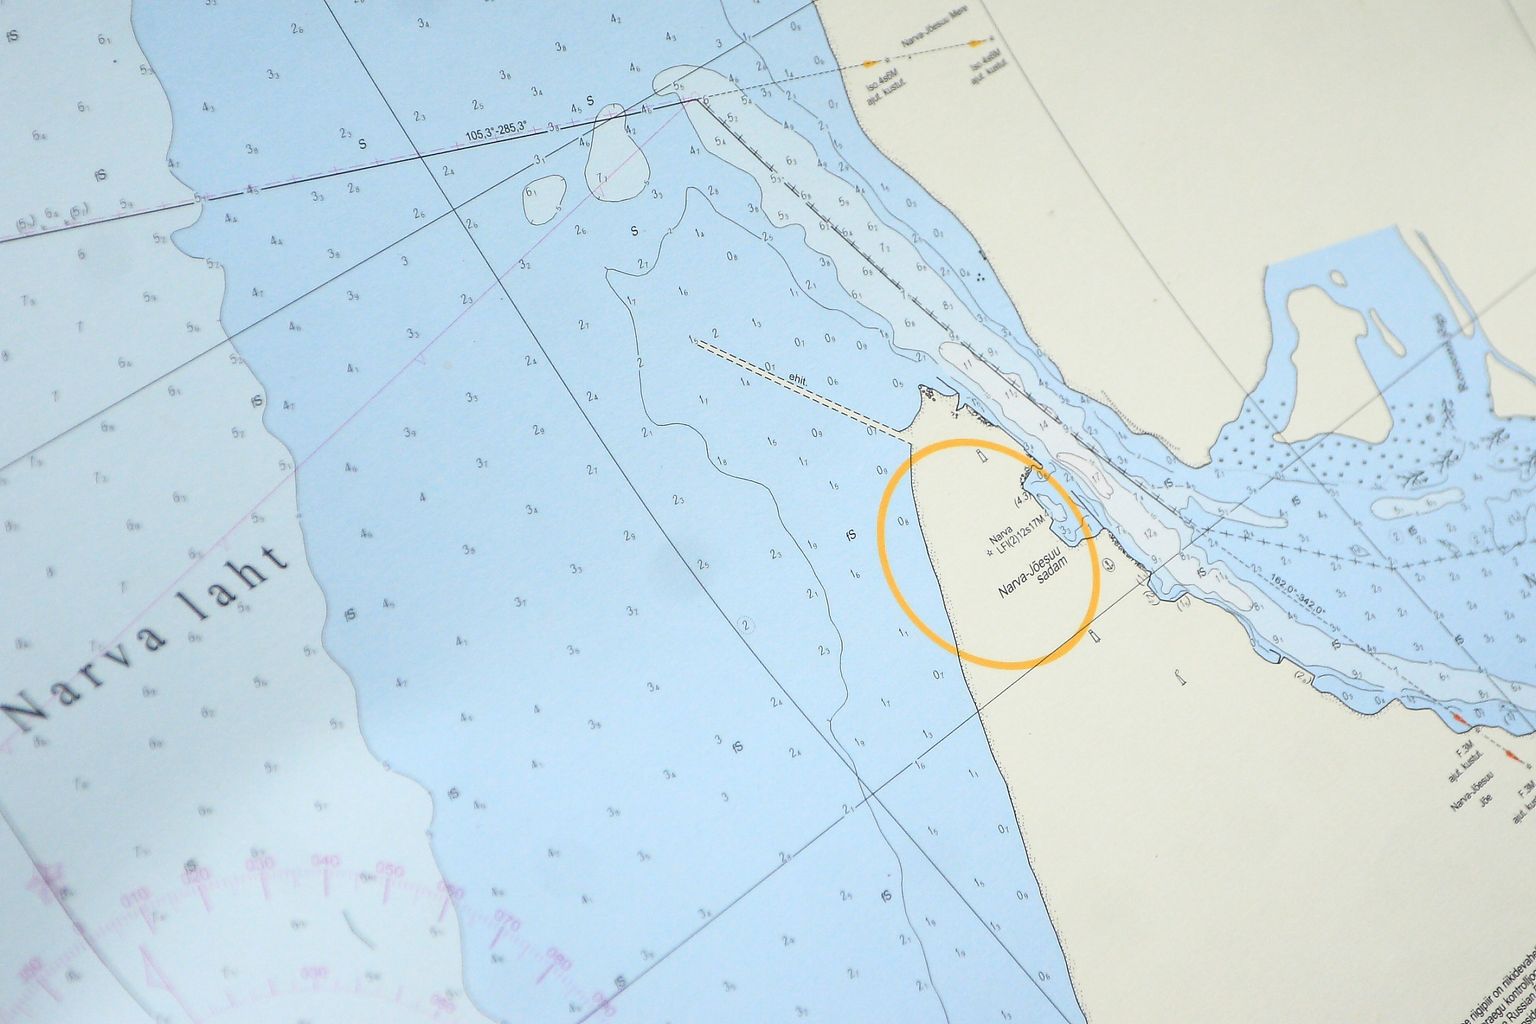 Narva lahe kaardile märgitud piirijõe suue ja vana meremuul.